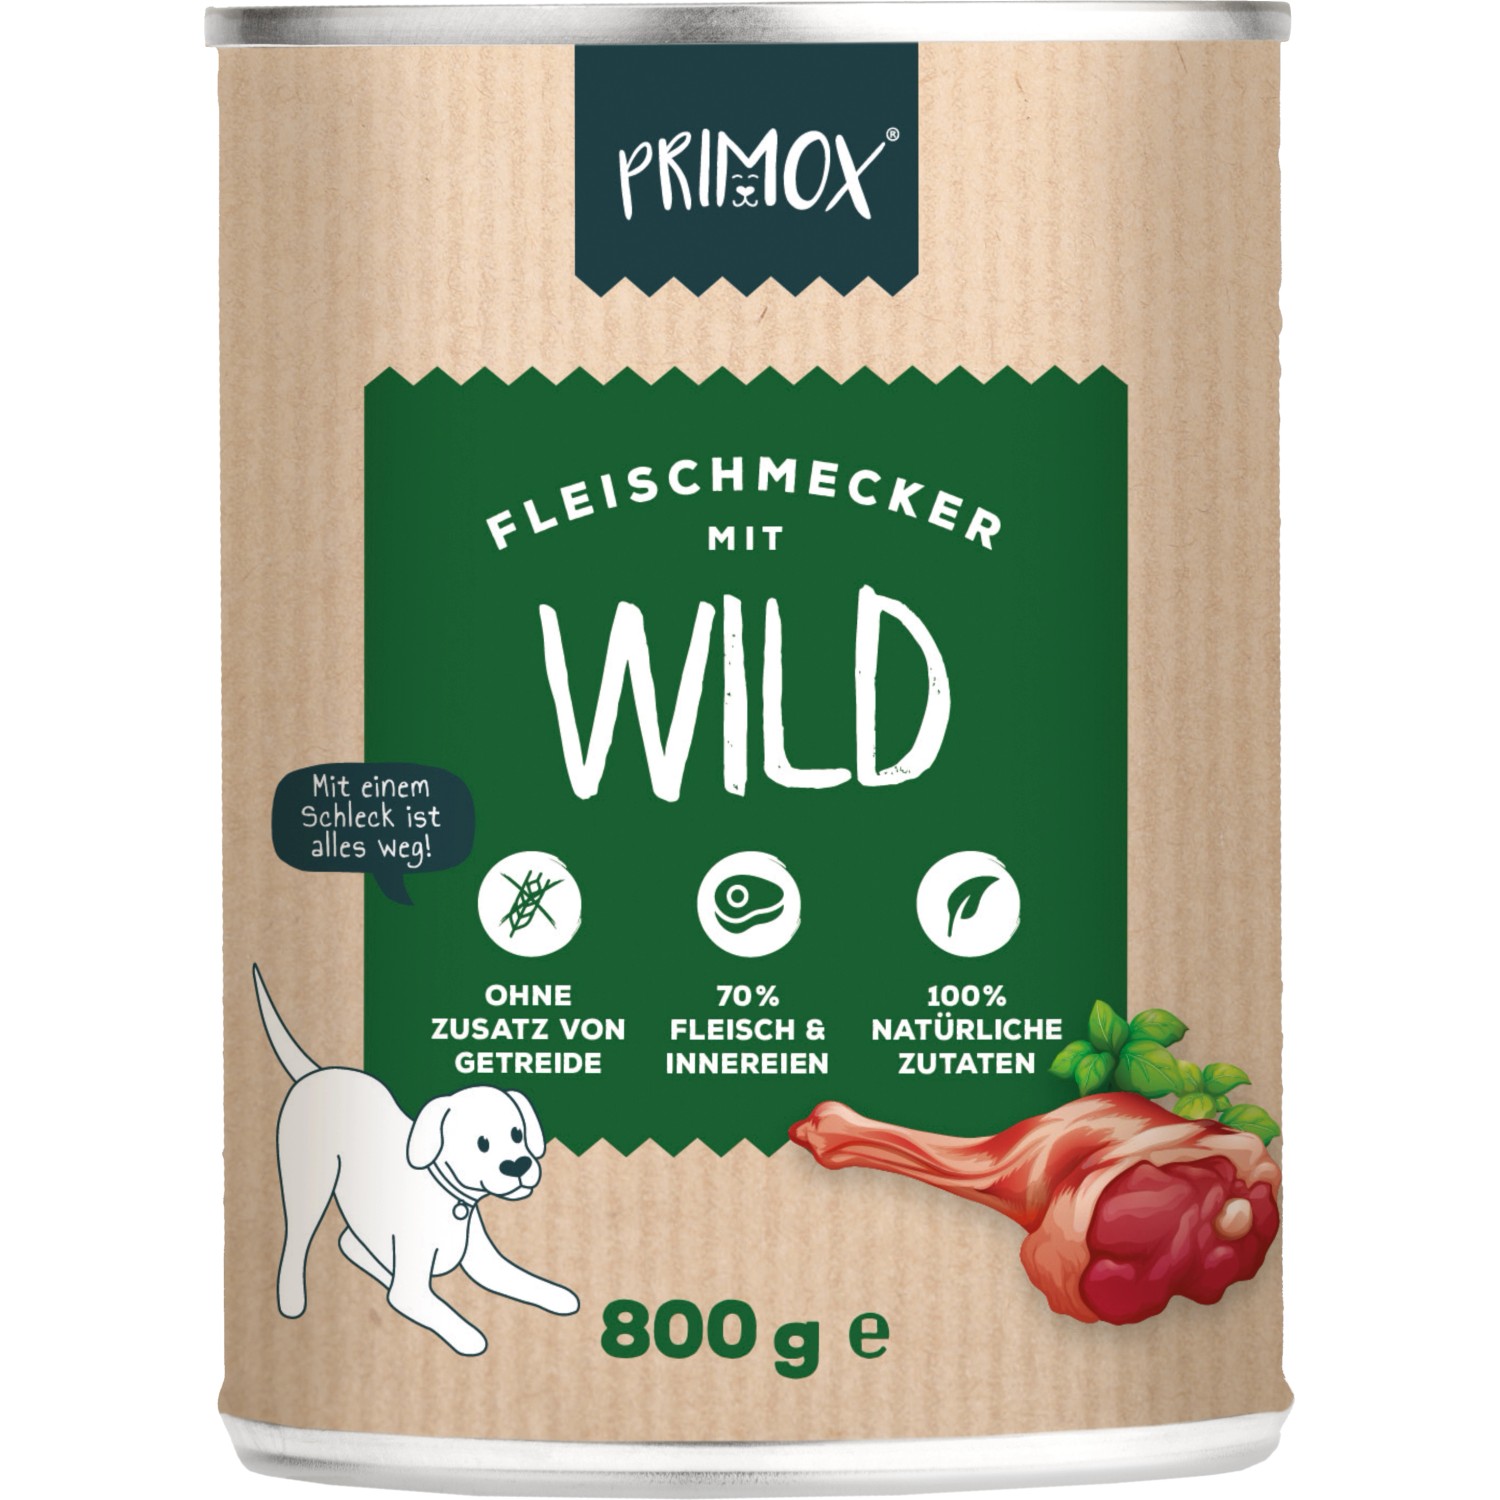 Primox Fleischmecker Wild 800 g